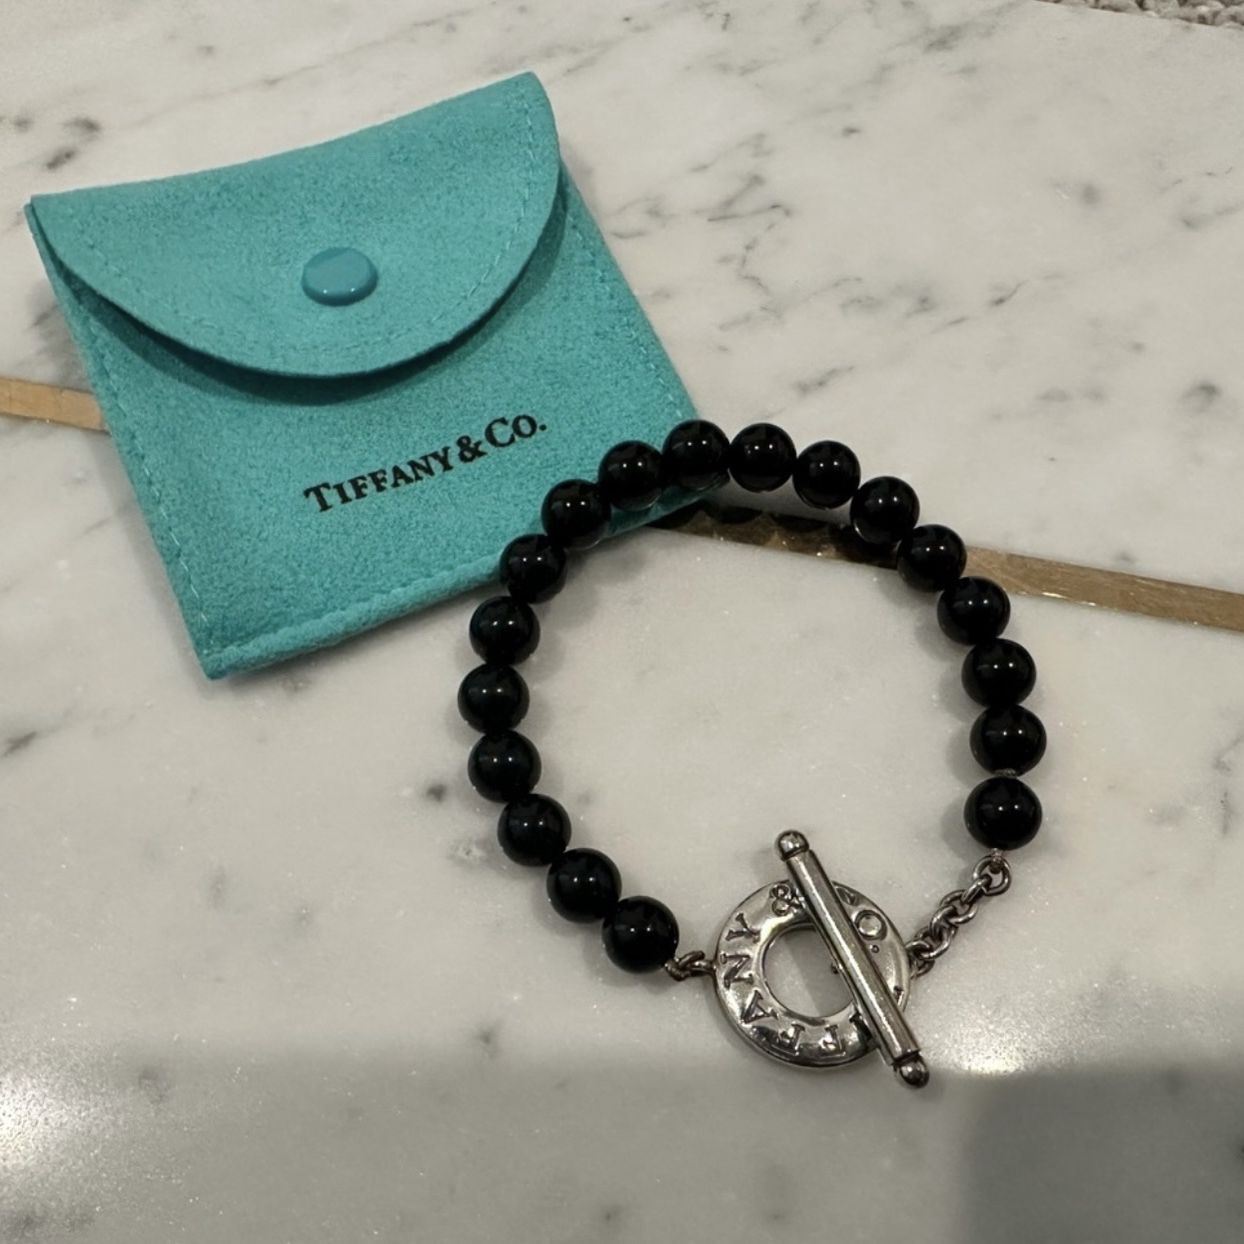 Tiffany & Co Beads Toggle Bracelet Black Onyx